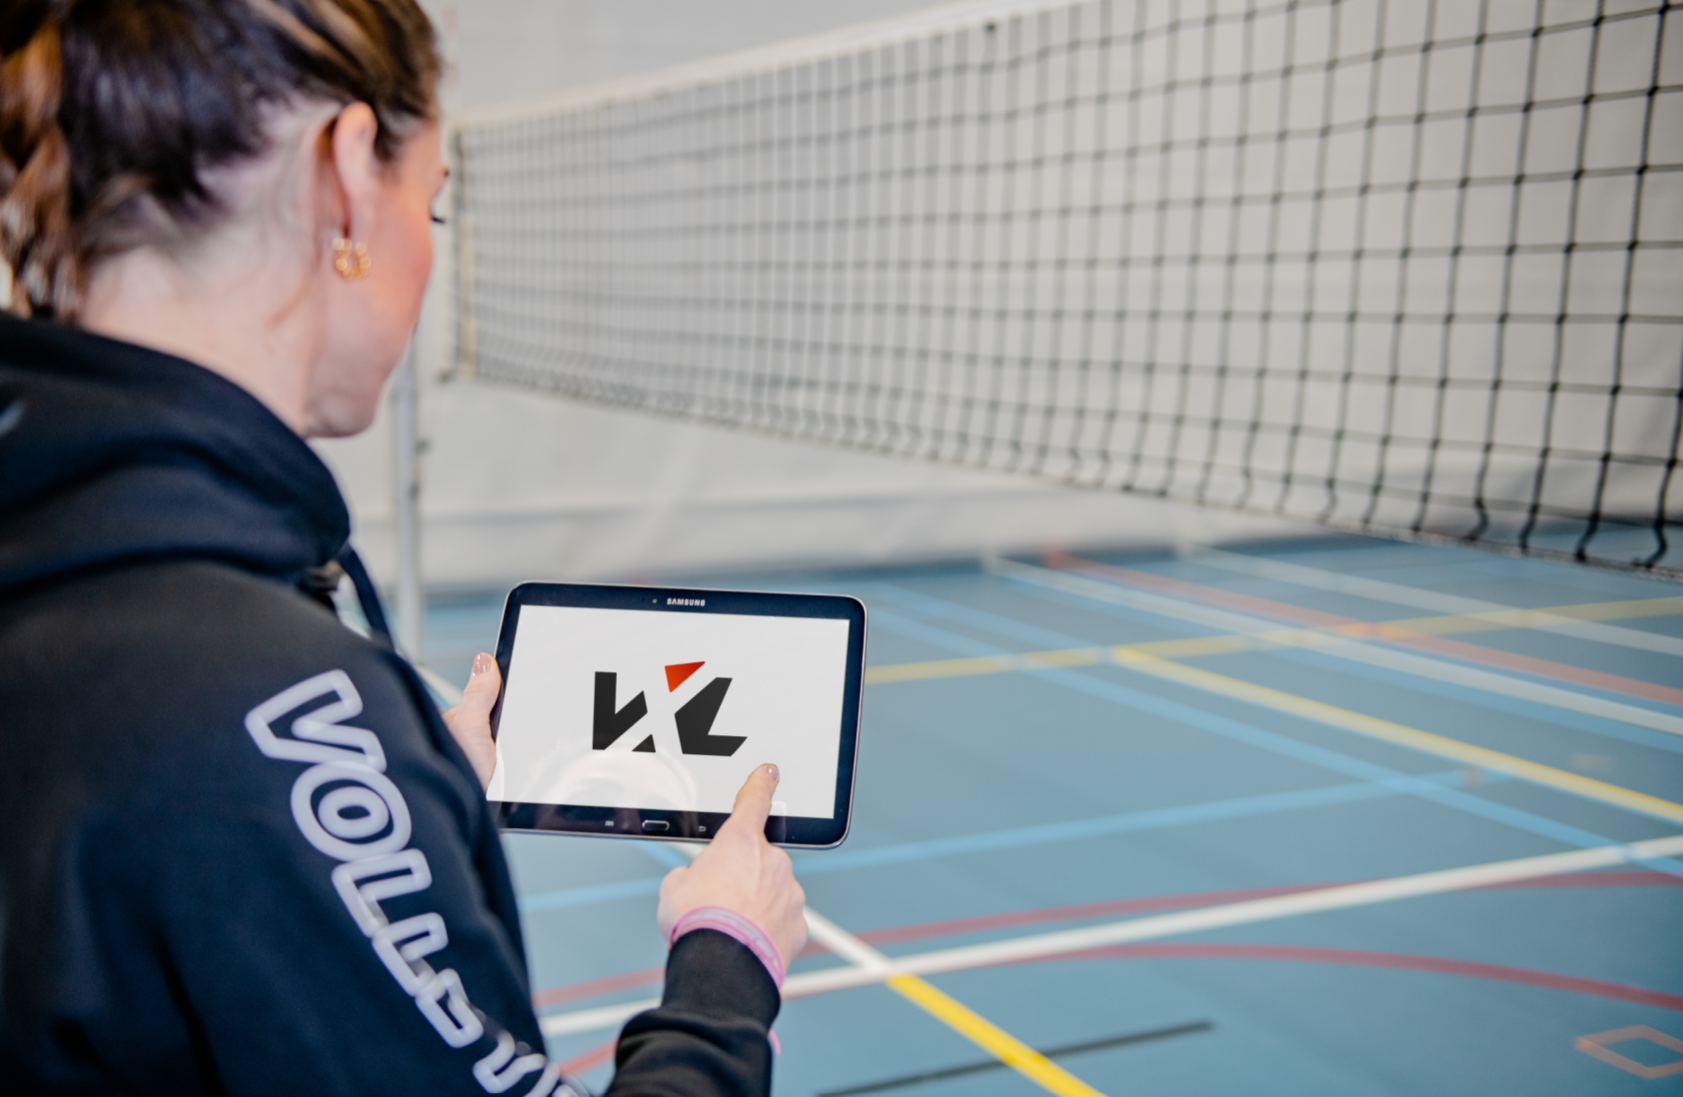 VolleybalXL op het Startscherm van je smartphone of tablet zetten